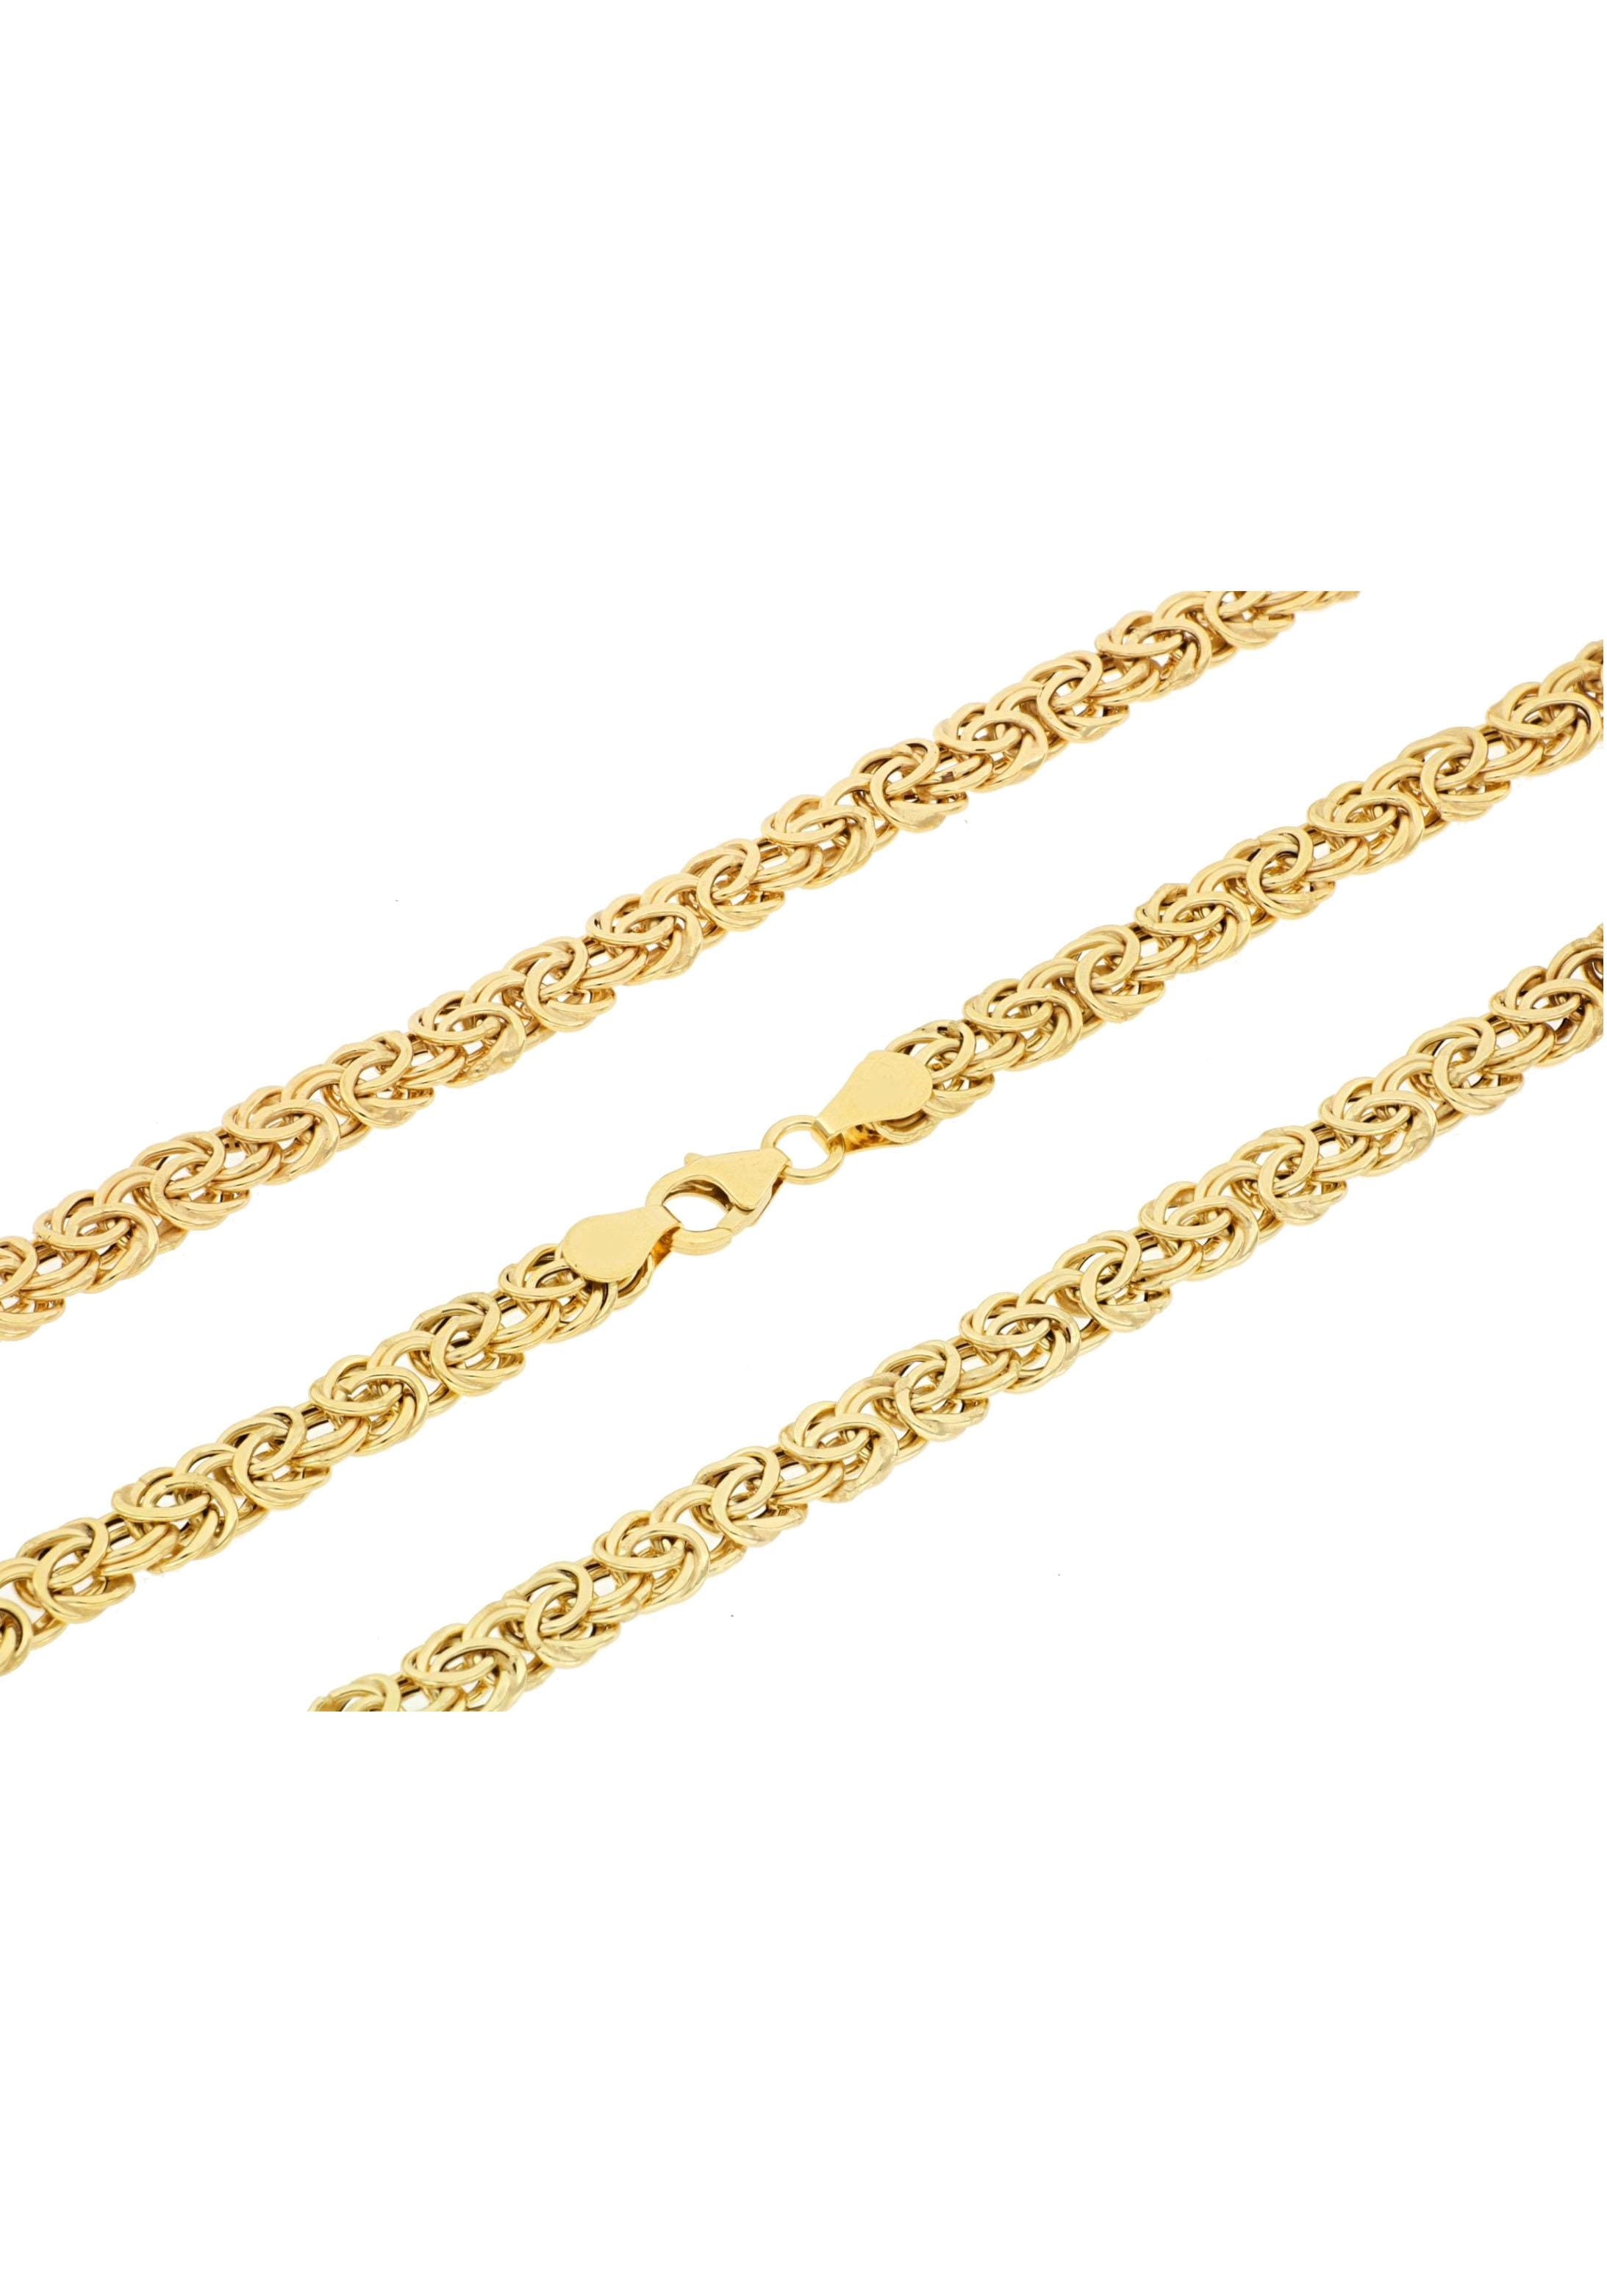 Königskettengliederung« Goldkette kaufen oval, Firetti online »Glanz,